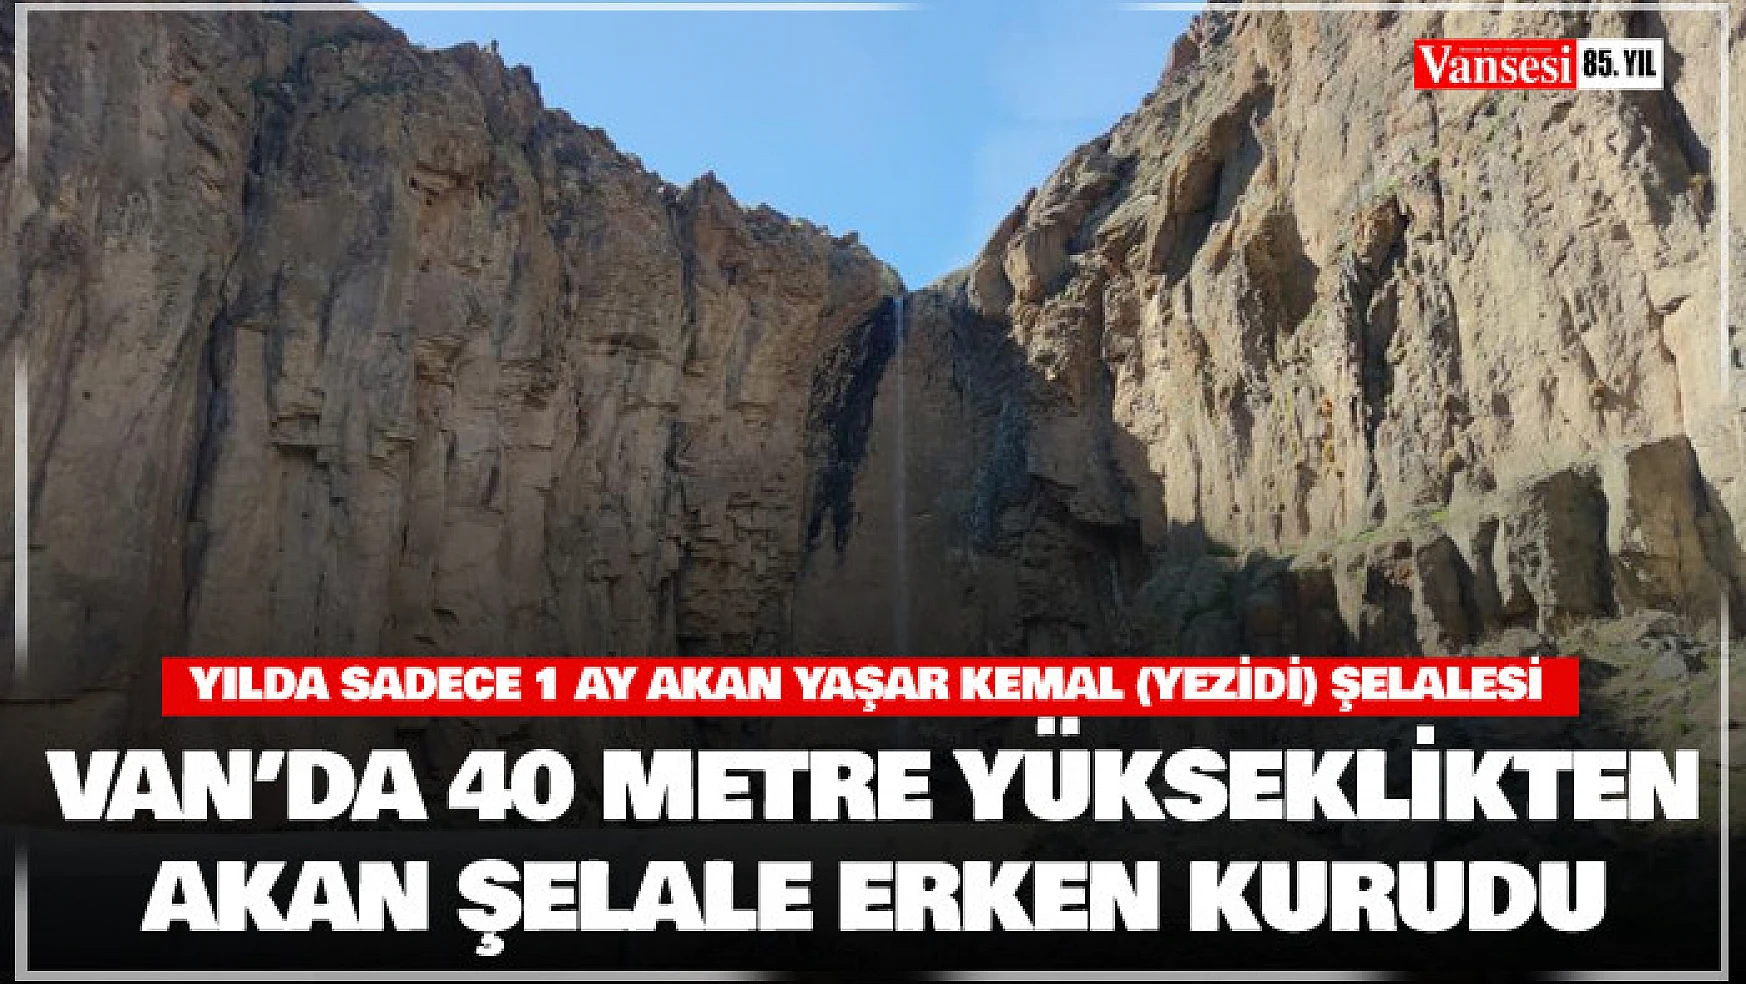 Van'da 40 metre yükseklikten akan Yaşar Kemal Şelalesi erken kurudu